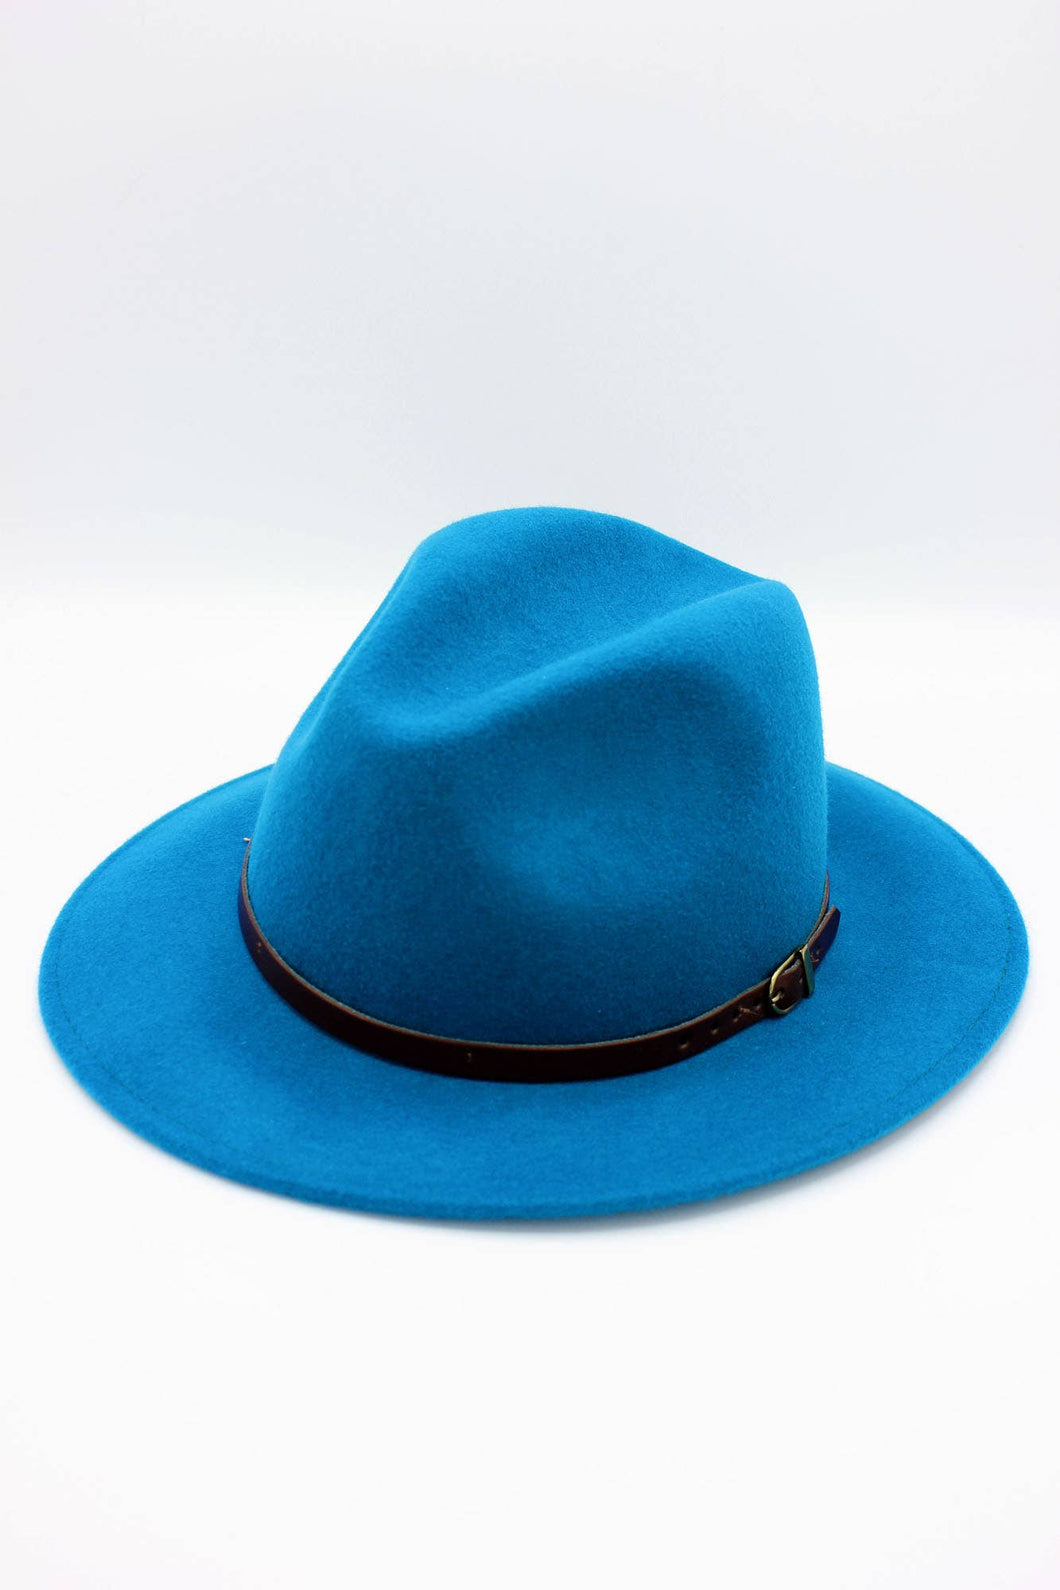 Classic Wool Fedora Hat with Belt: 57 / Petrol